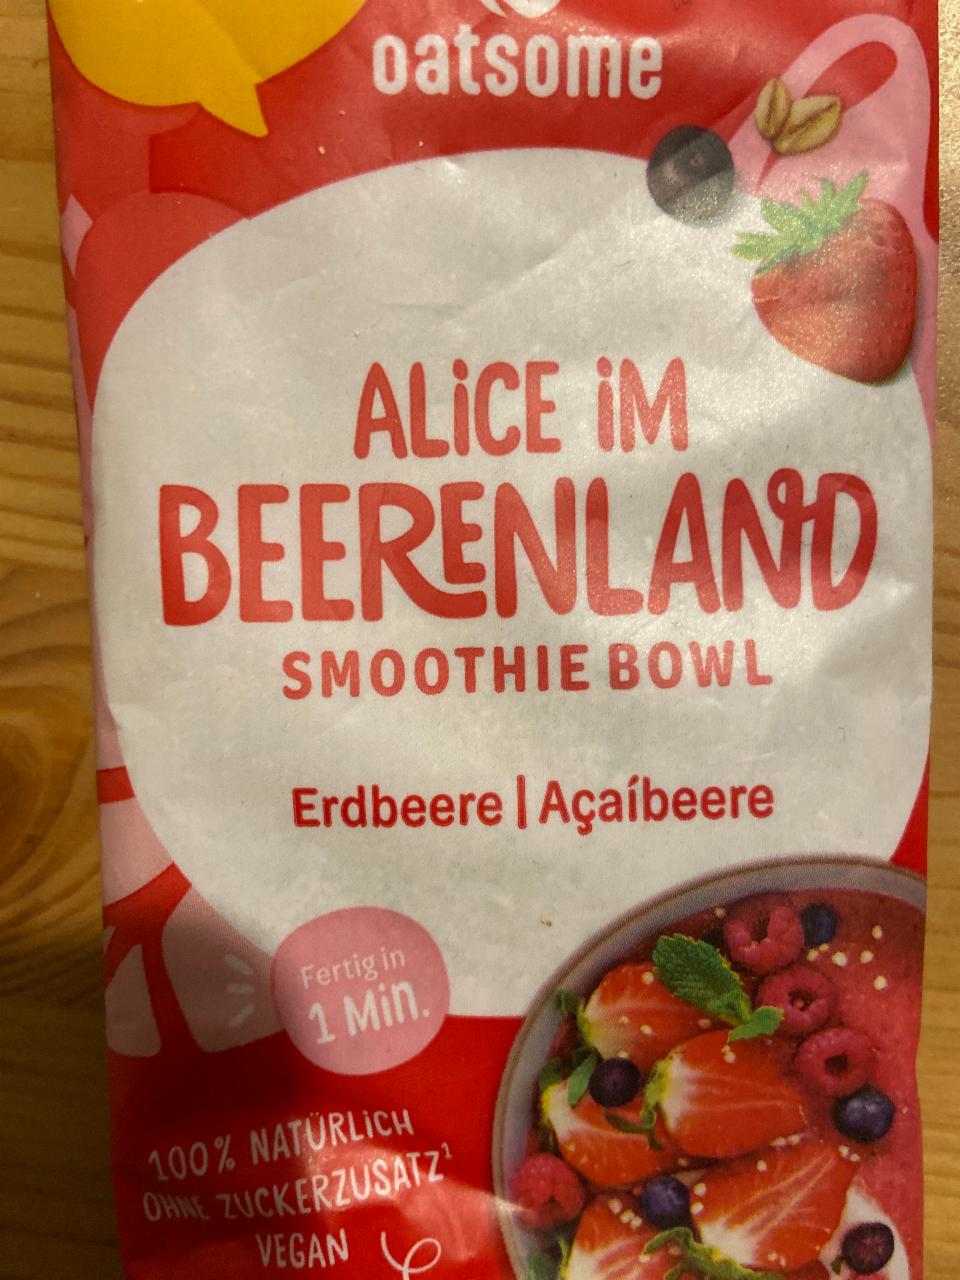 Фото - Alice im Beerenland Smoothie Bowl Erdbeere Acaíbeere Oatsome